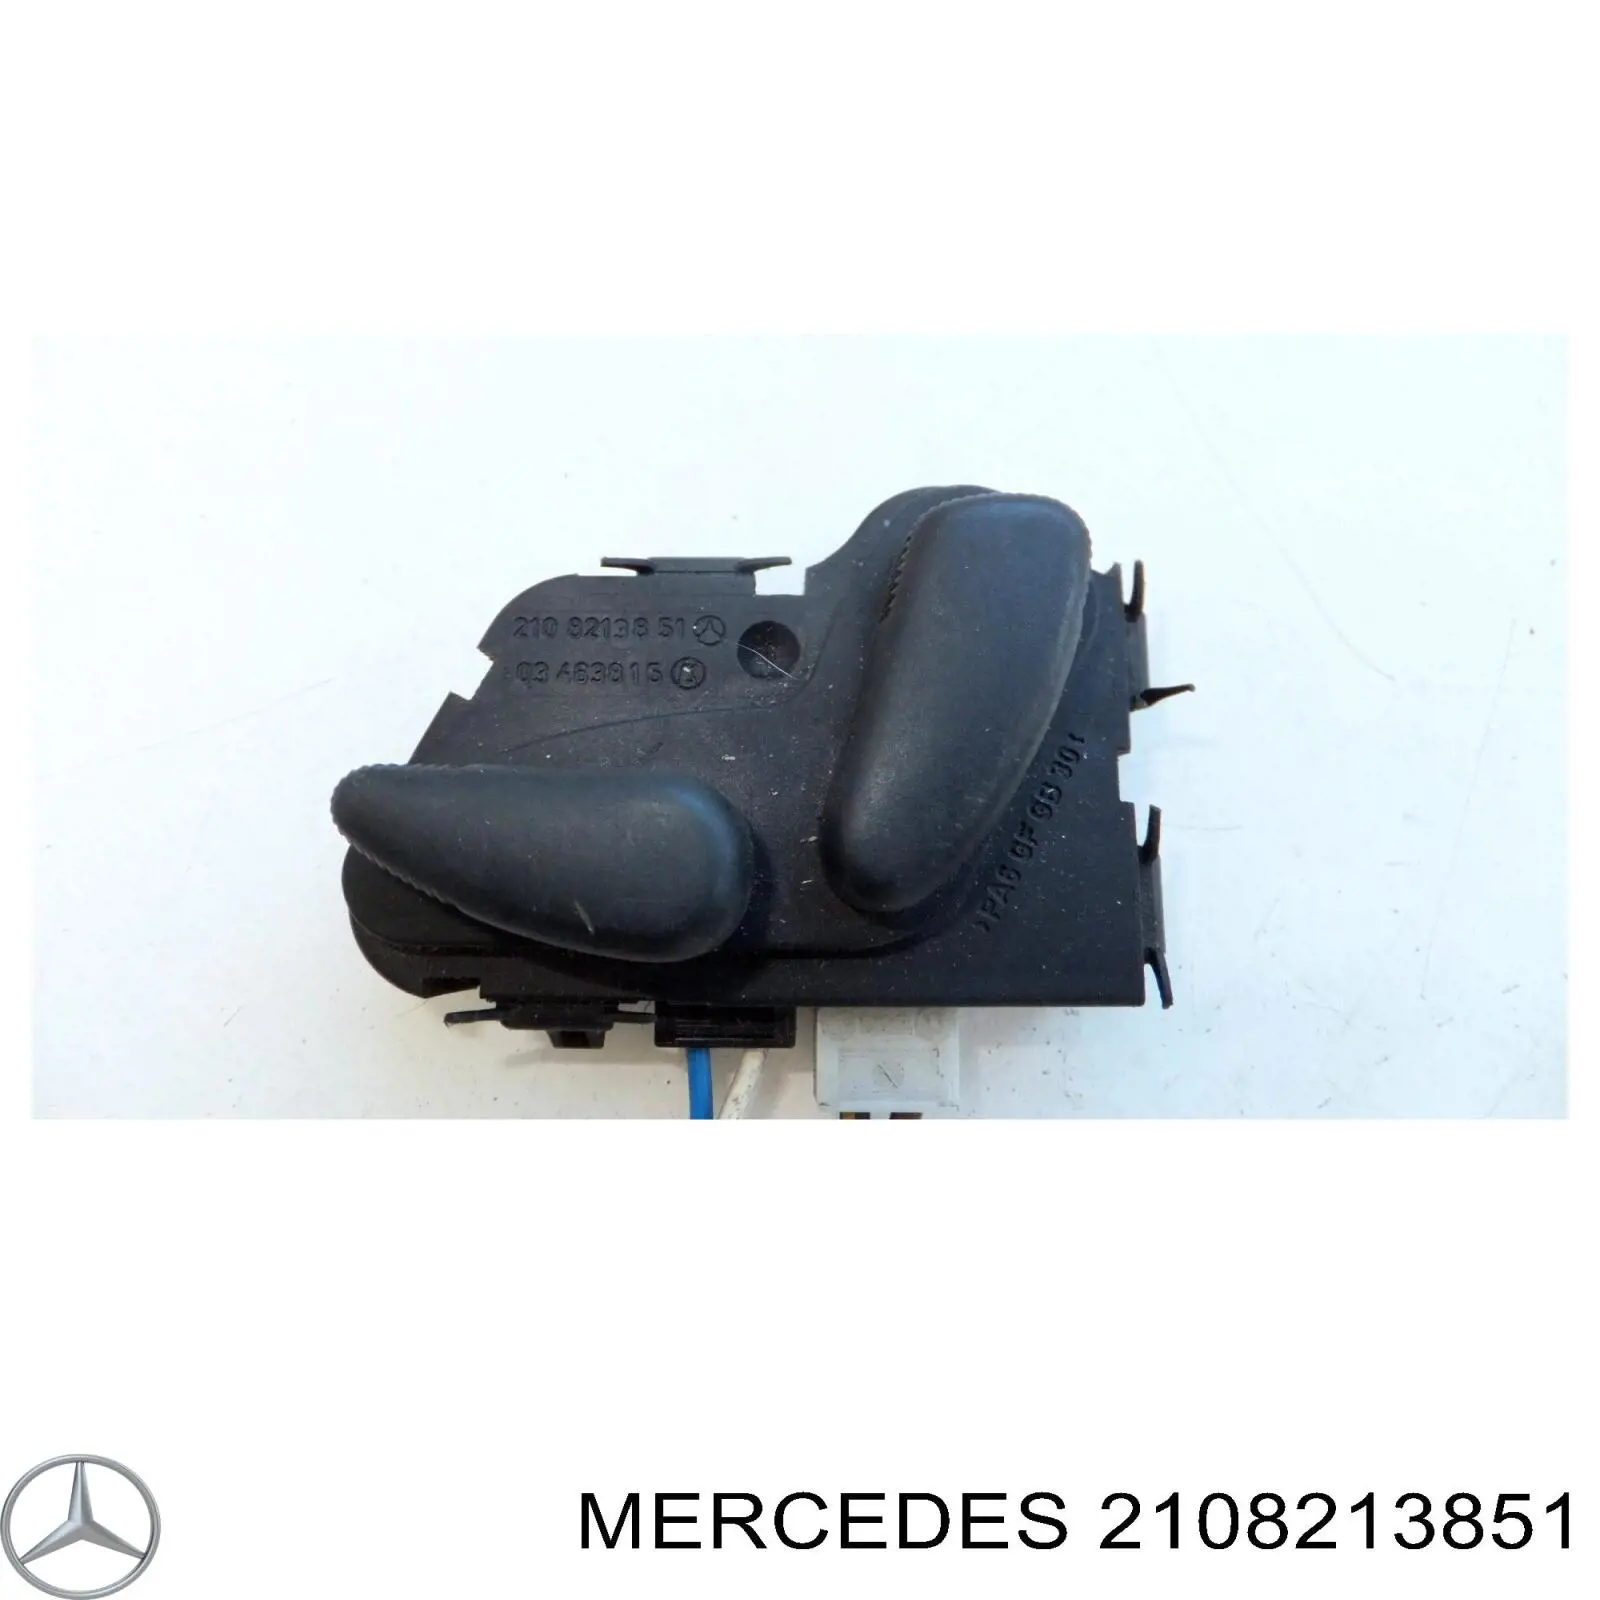 Boton De Ajuste De Asiento Bloque Derecho para Mercedes E (W211)